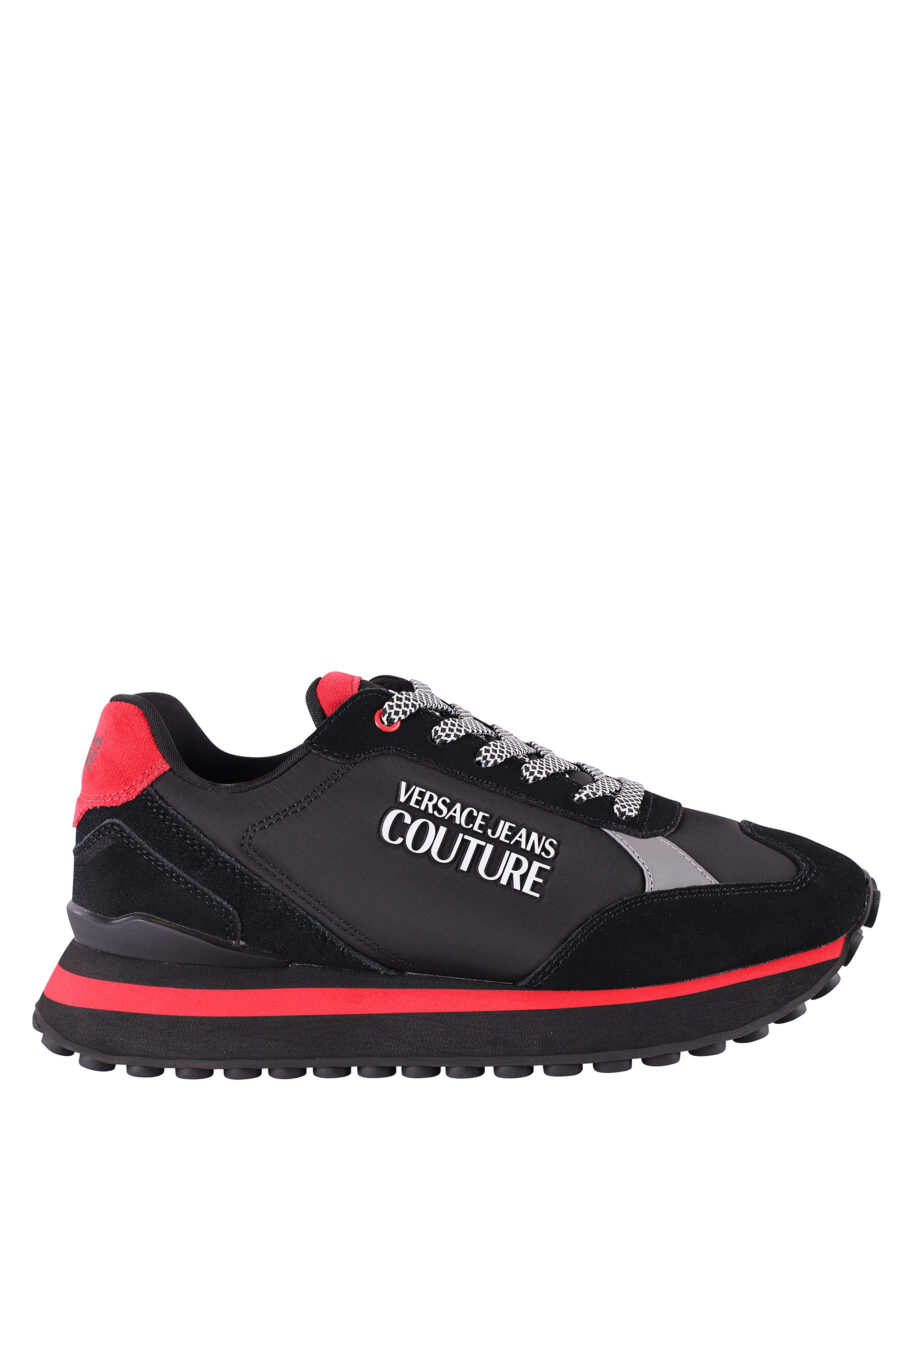 Zapatillas negras y rojas con plataforma y logo plateado - IMG 8492